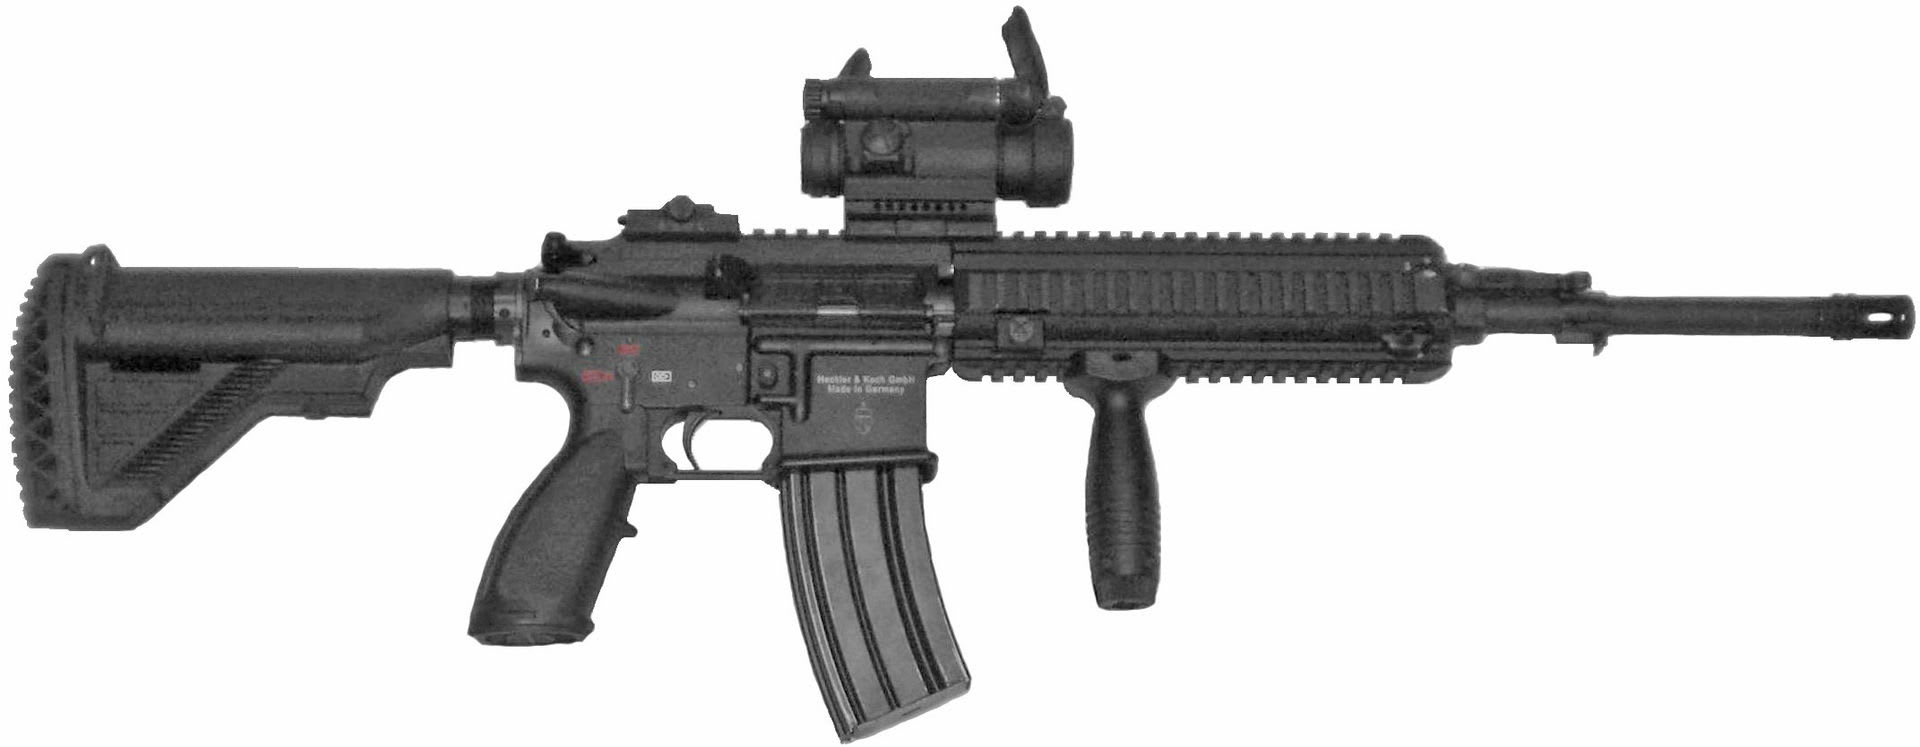  HK416F nová zbraň francouzské armády